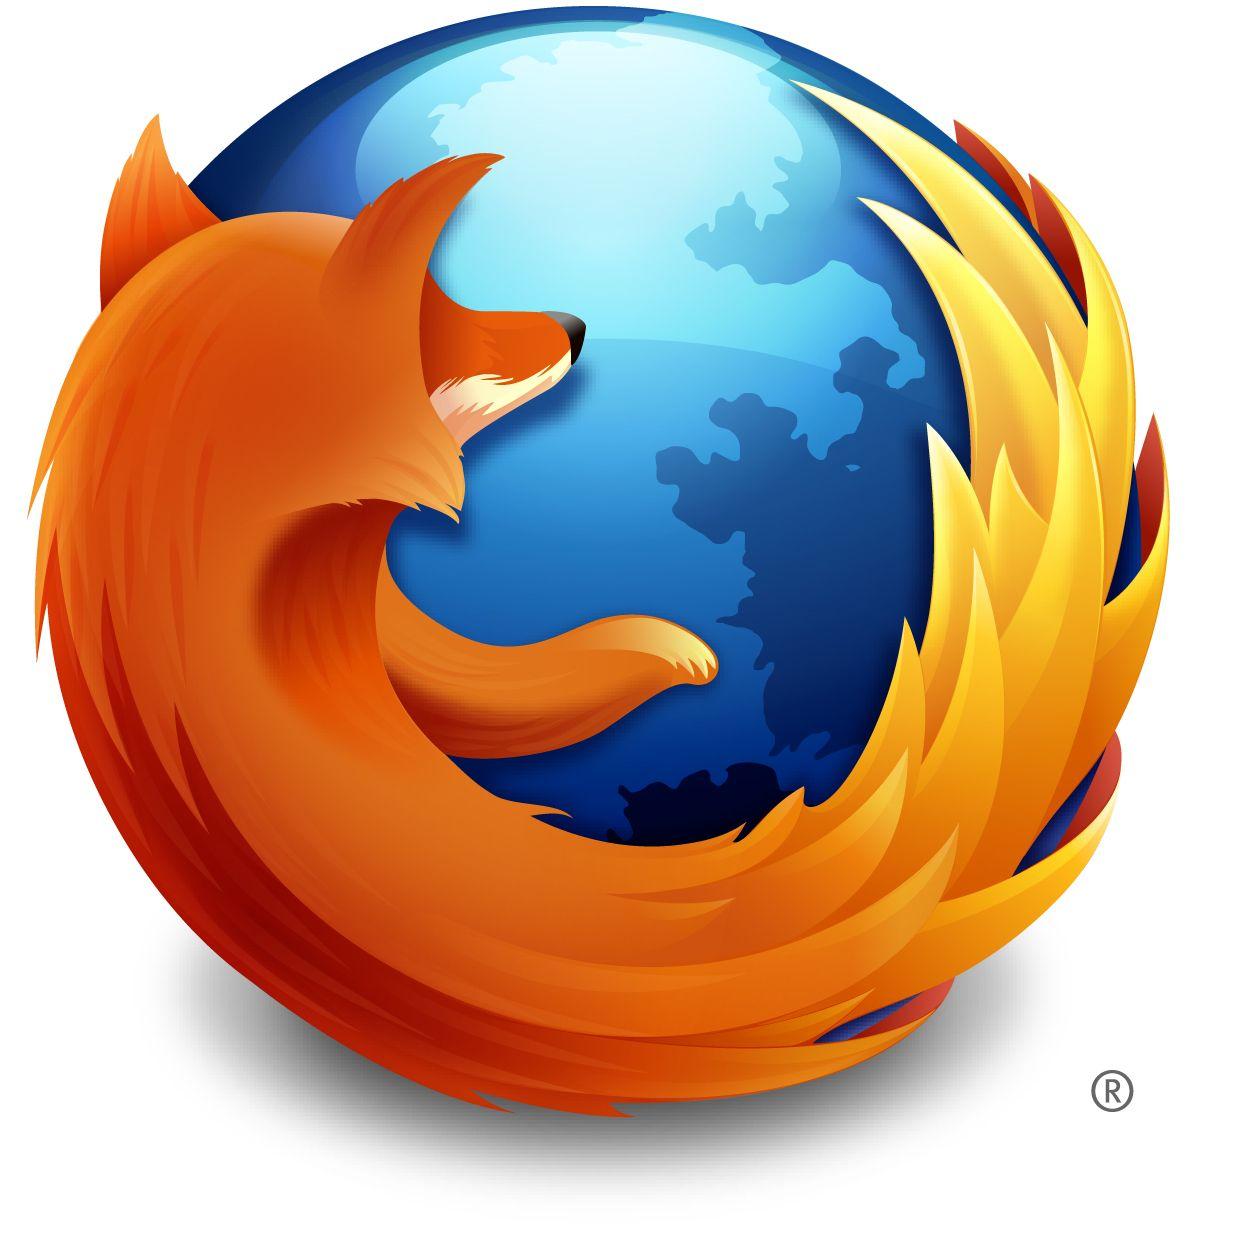 Mozzila Firefox Logo - The history of Mozilla and Firefox